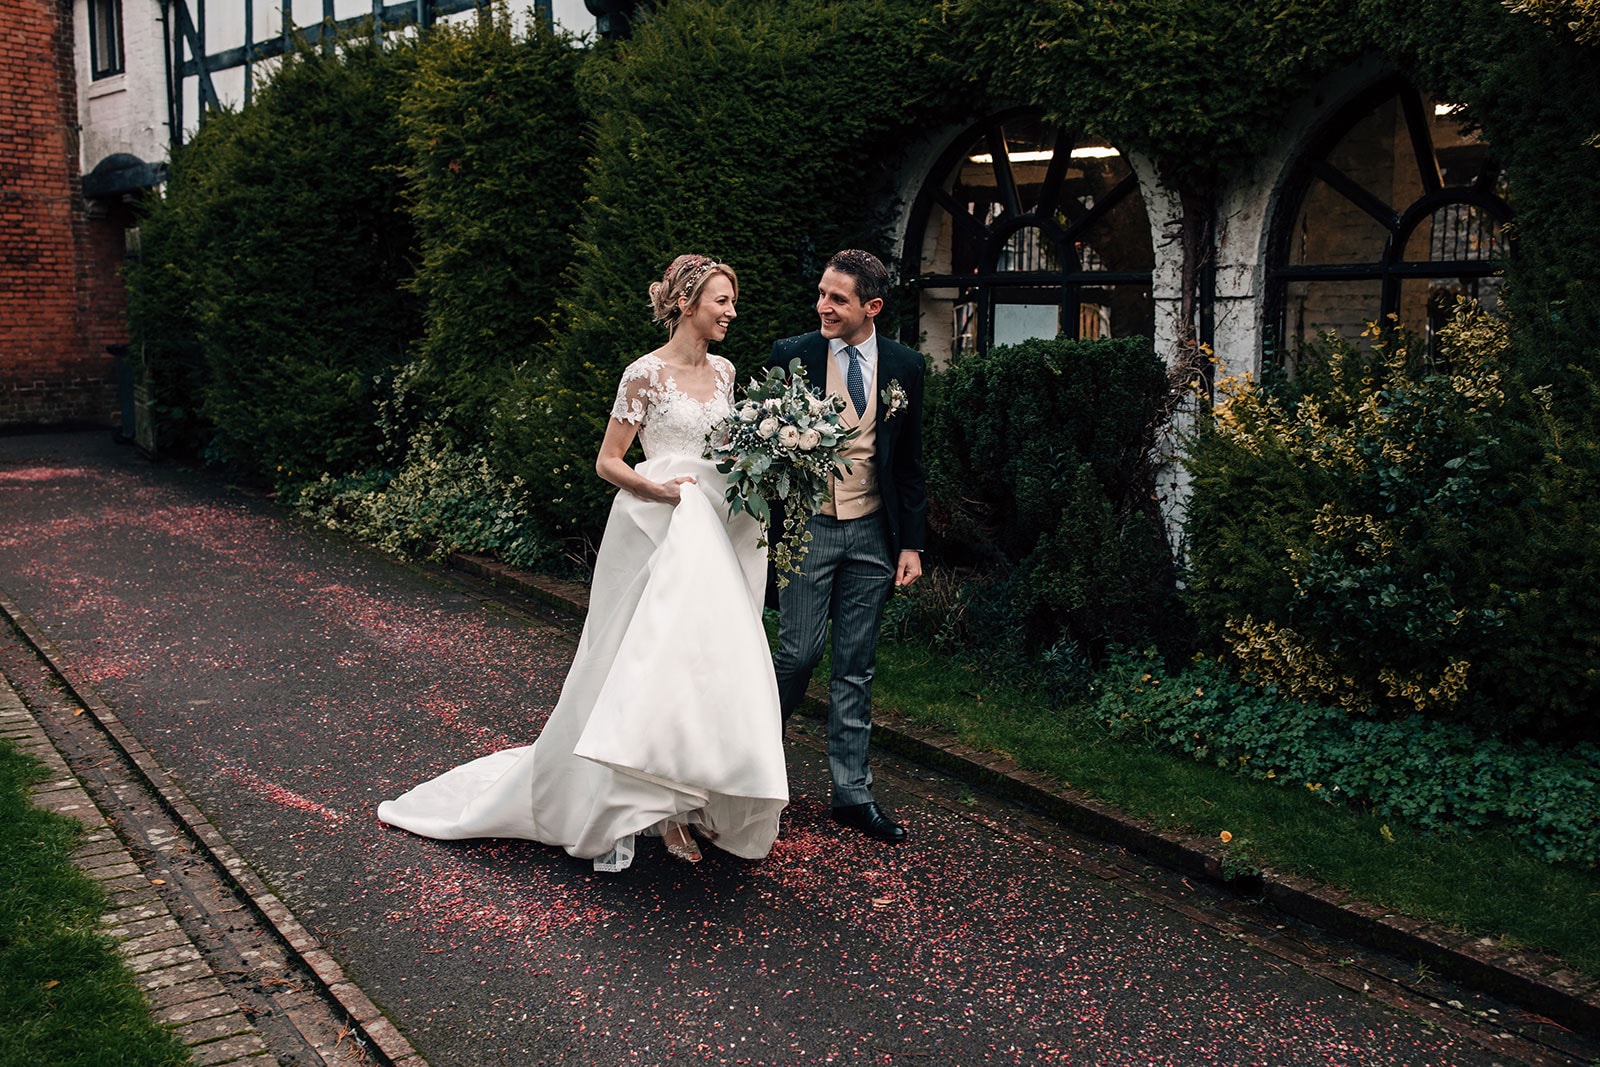 Bride and Groom celebrating their garden wedding in Much Wenlock, Shropshire